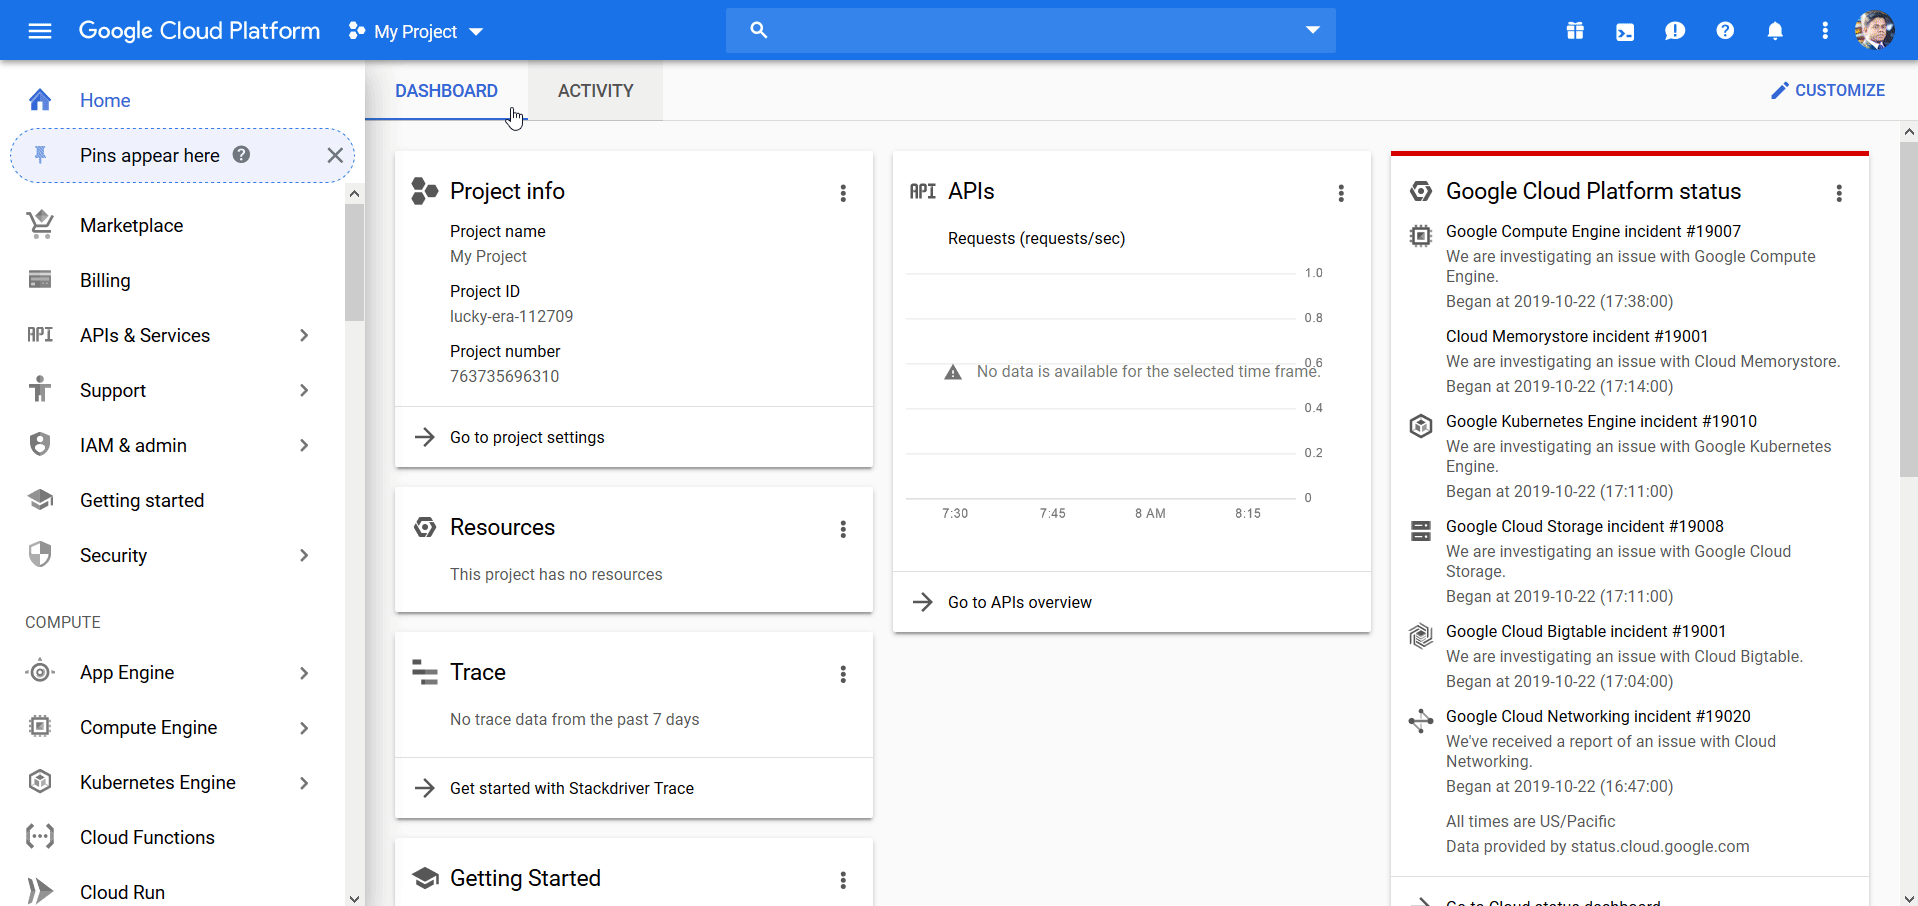 Conteo de visitantes de Google Analytics